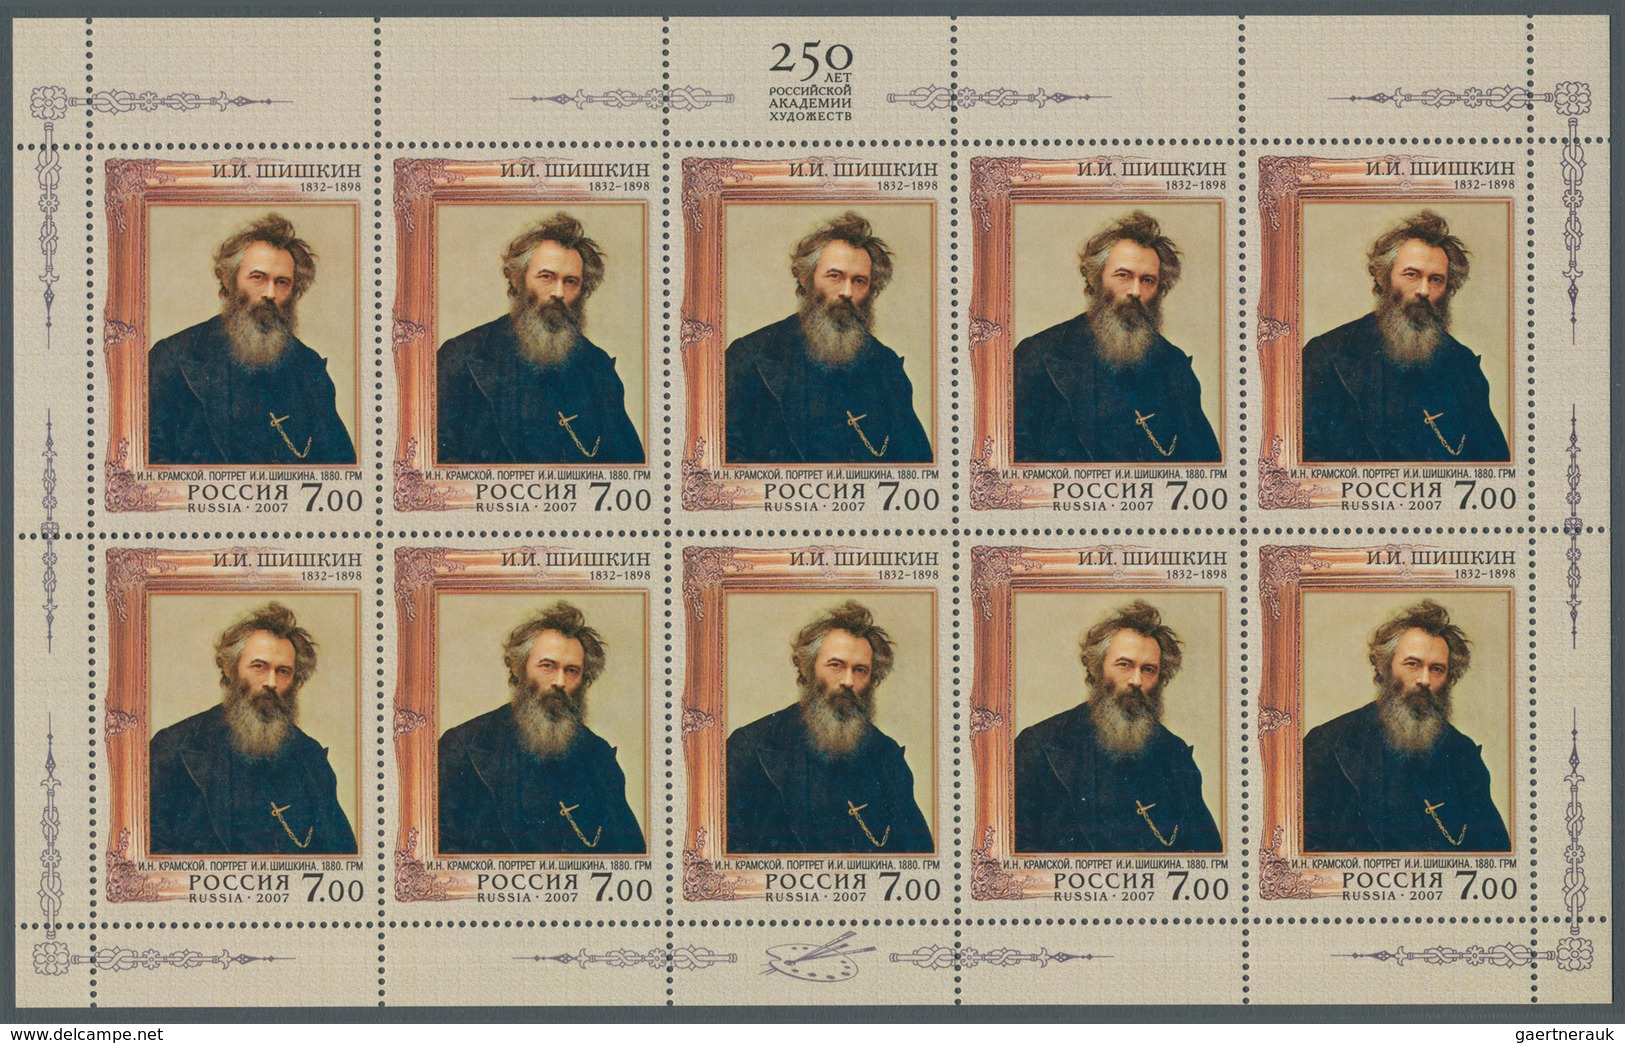 Russland: 2007, 7.00 R Iwan Schischkin Miniature Sheet Of Ten Stamps In K13 1/2 Perforation, Mint Ne - Gebruikt